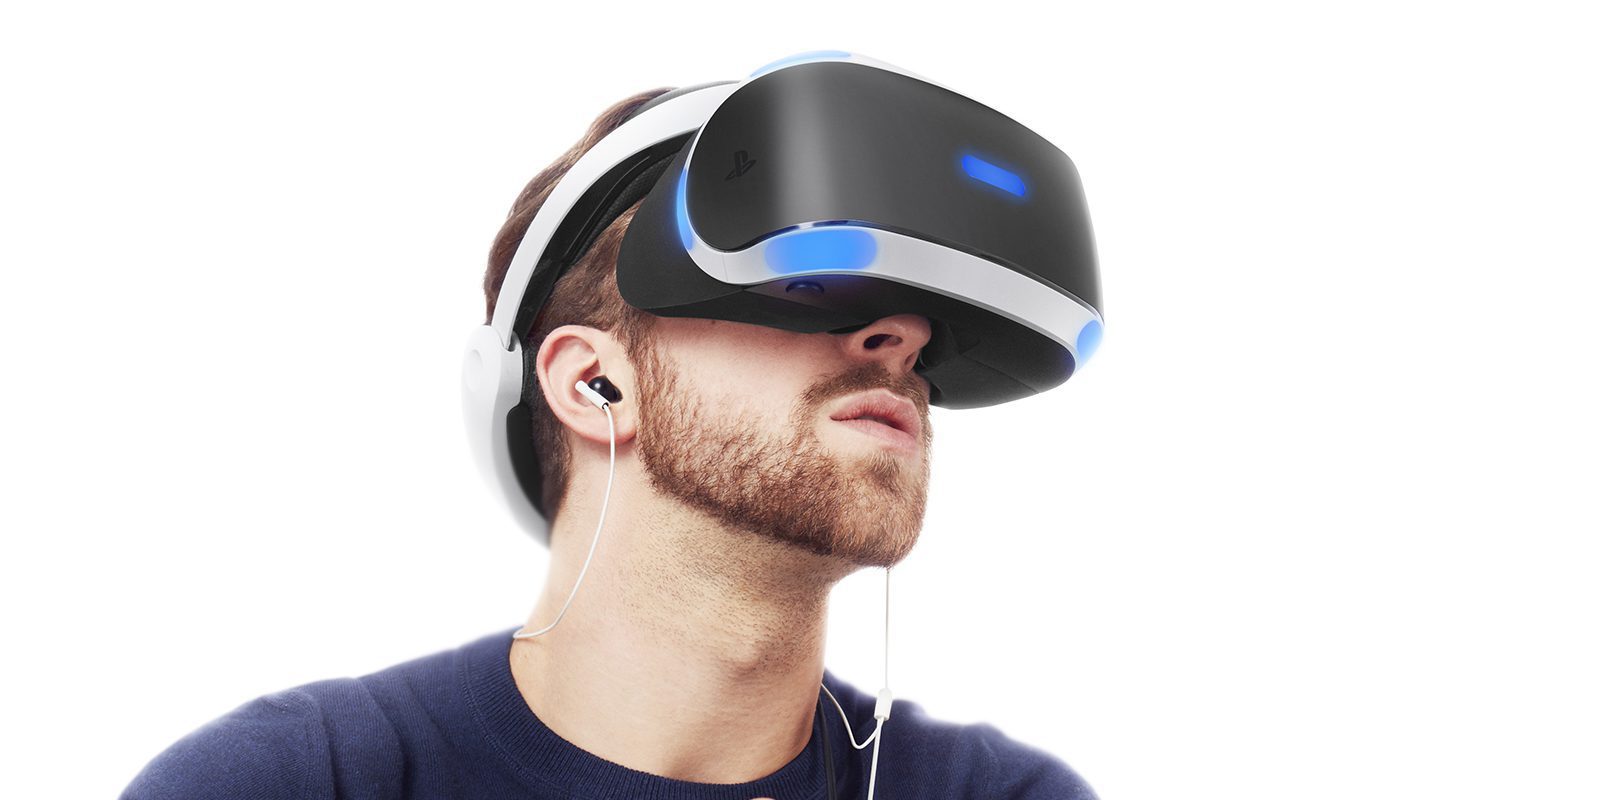 PSVR: 14 juegos con los que estrenar la realidad virtual - Reportaje